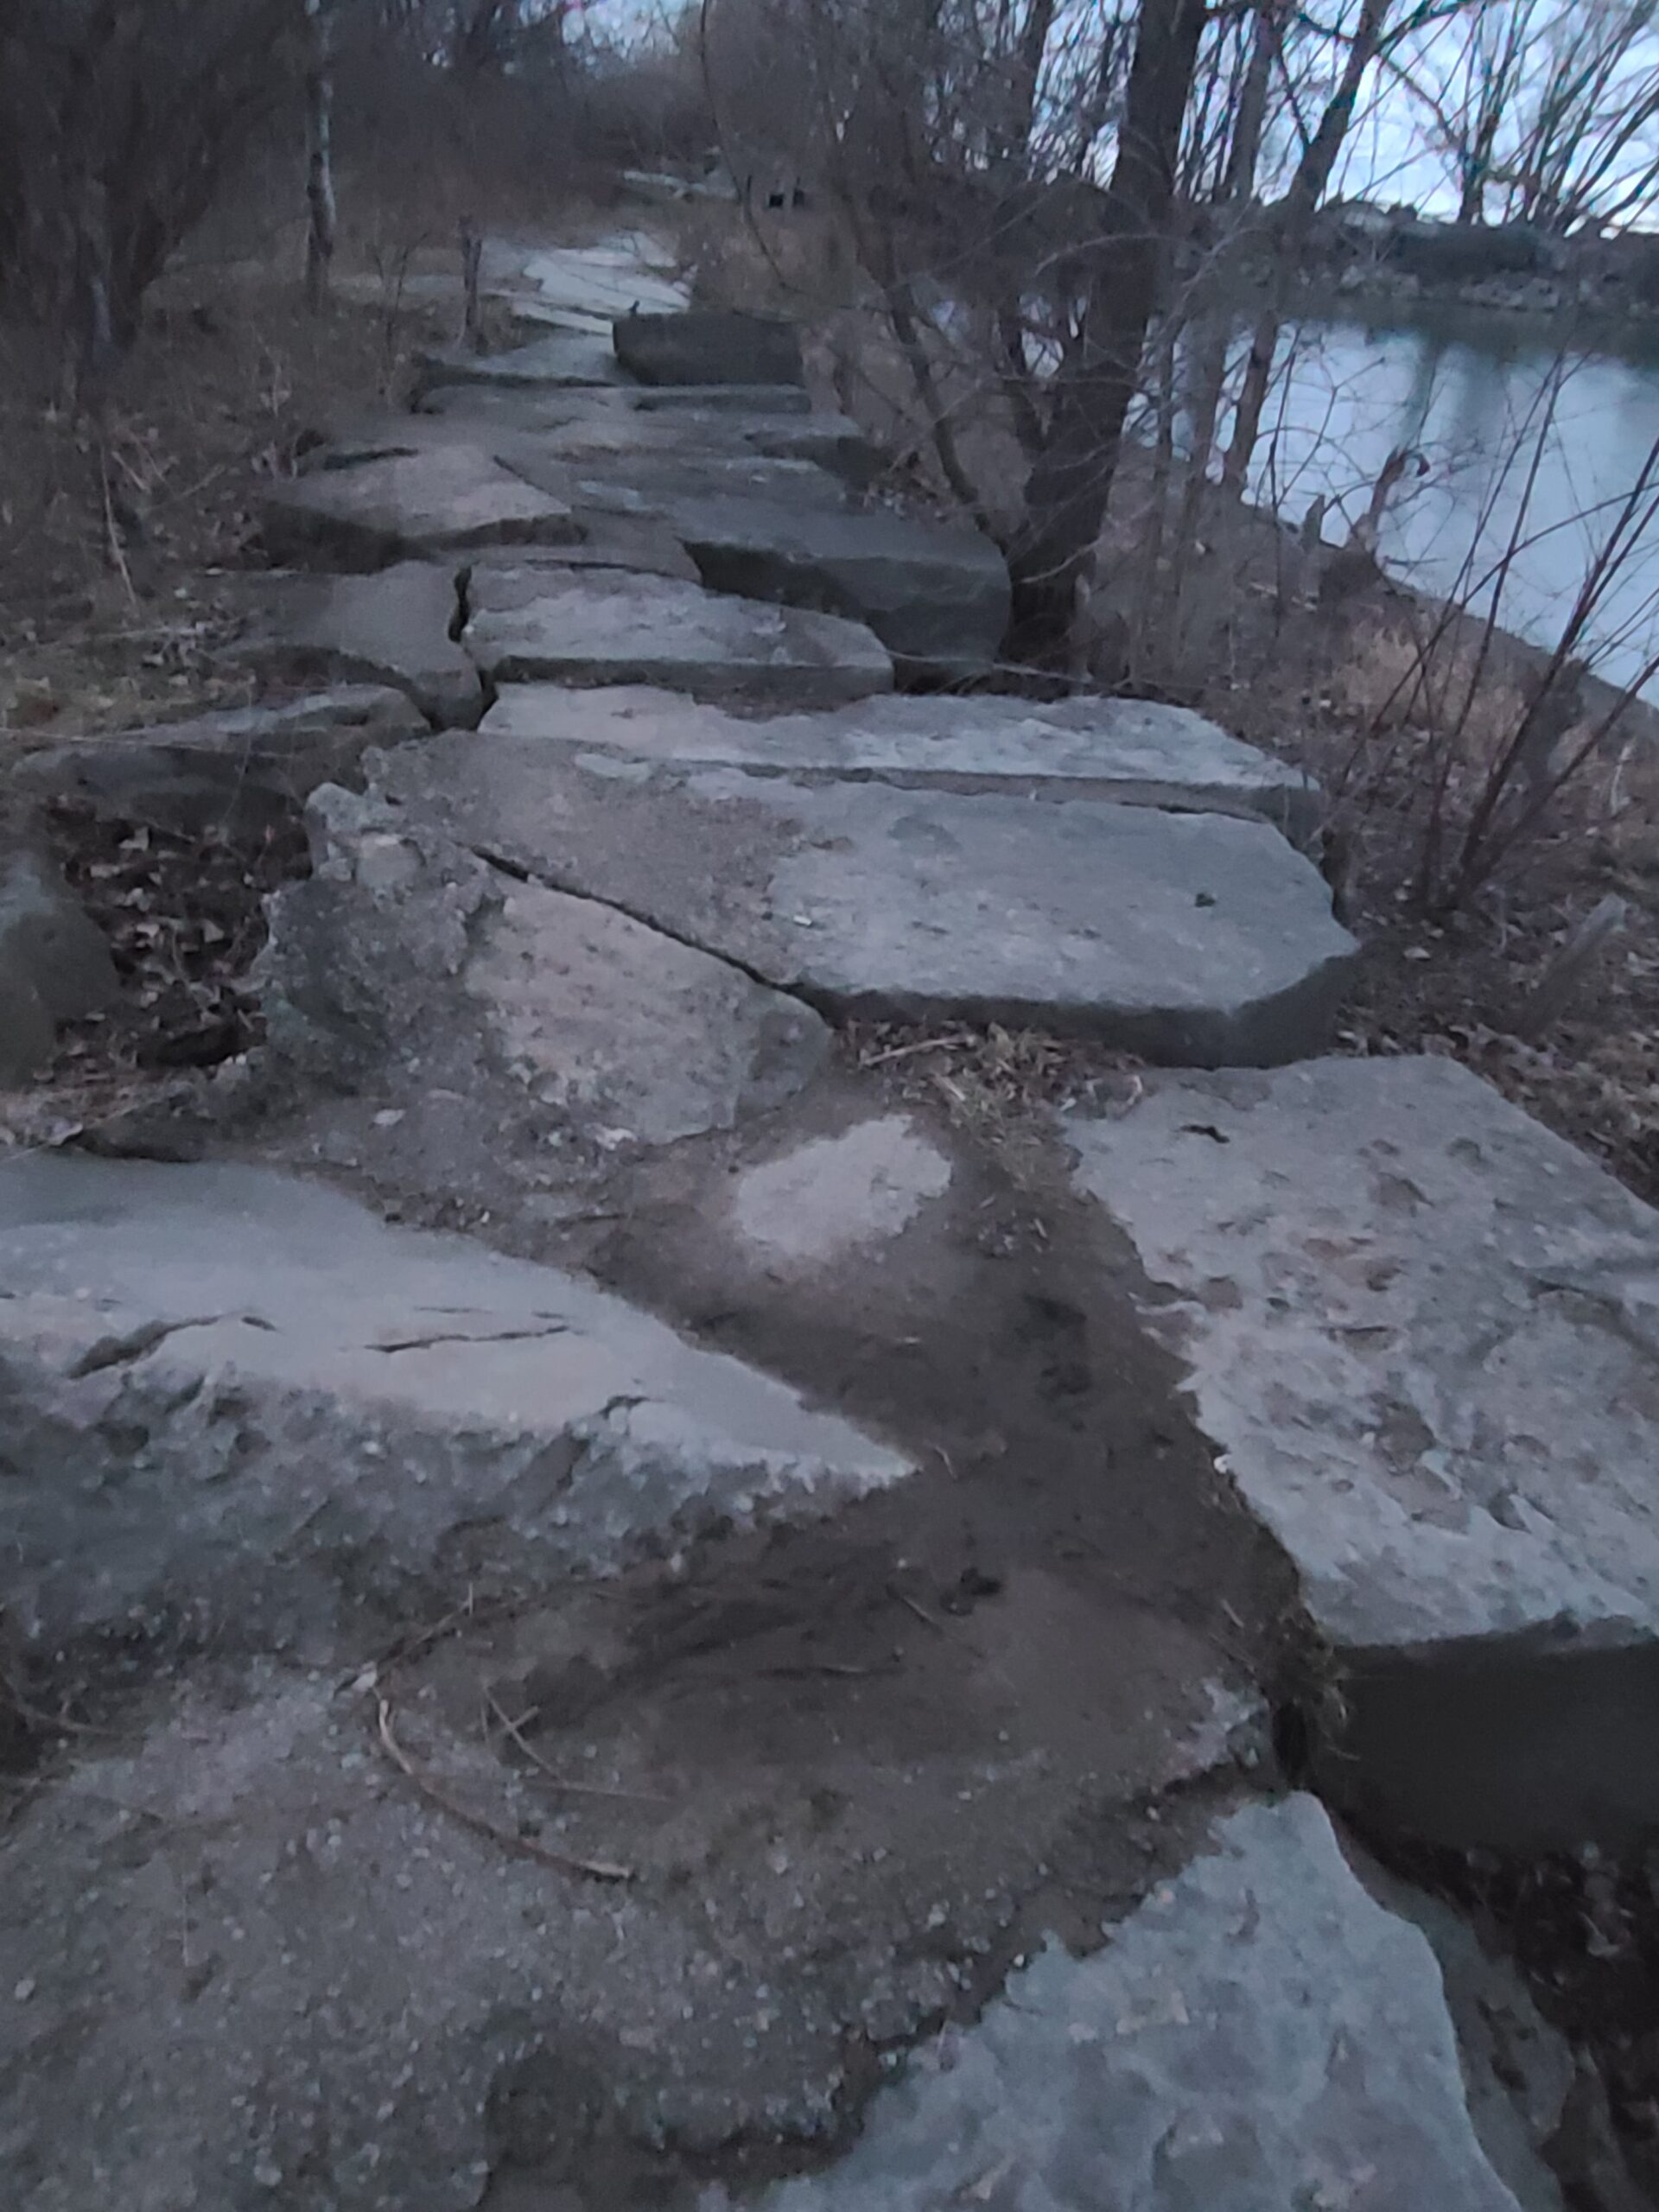 A rocky path along Lake Ontario.